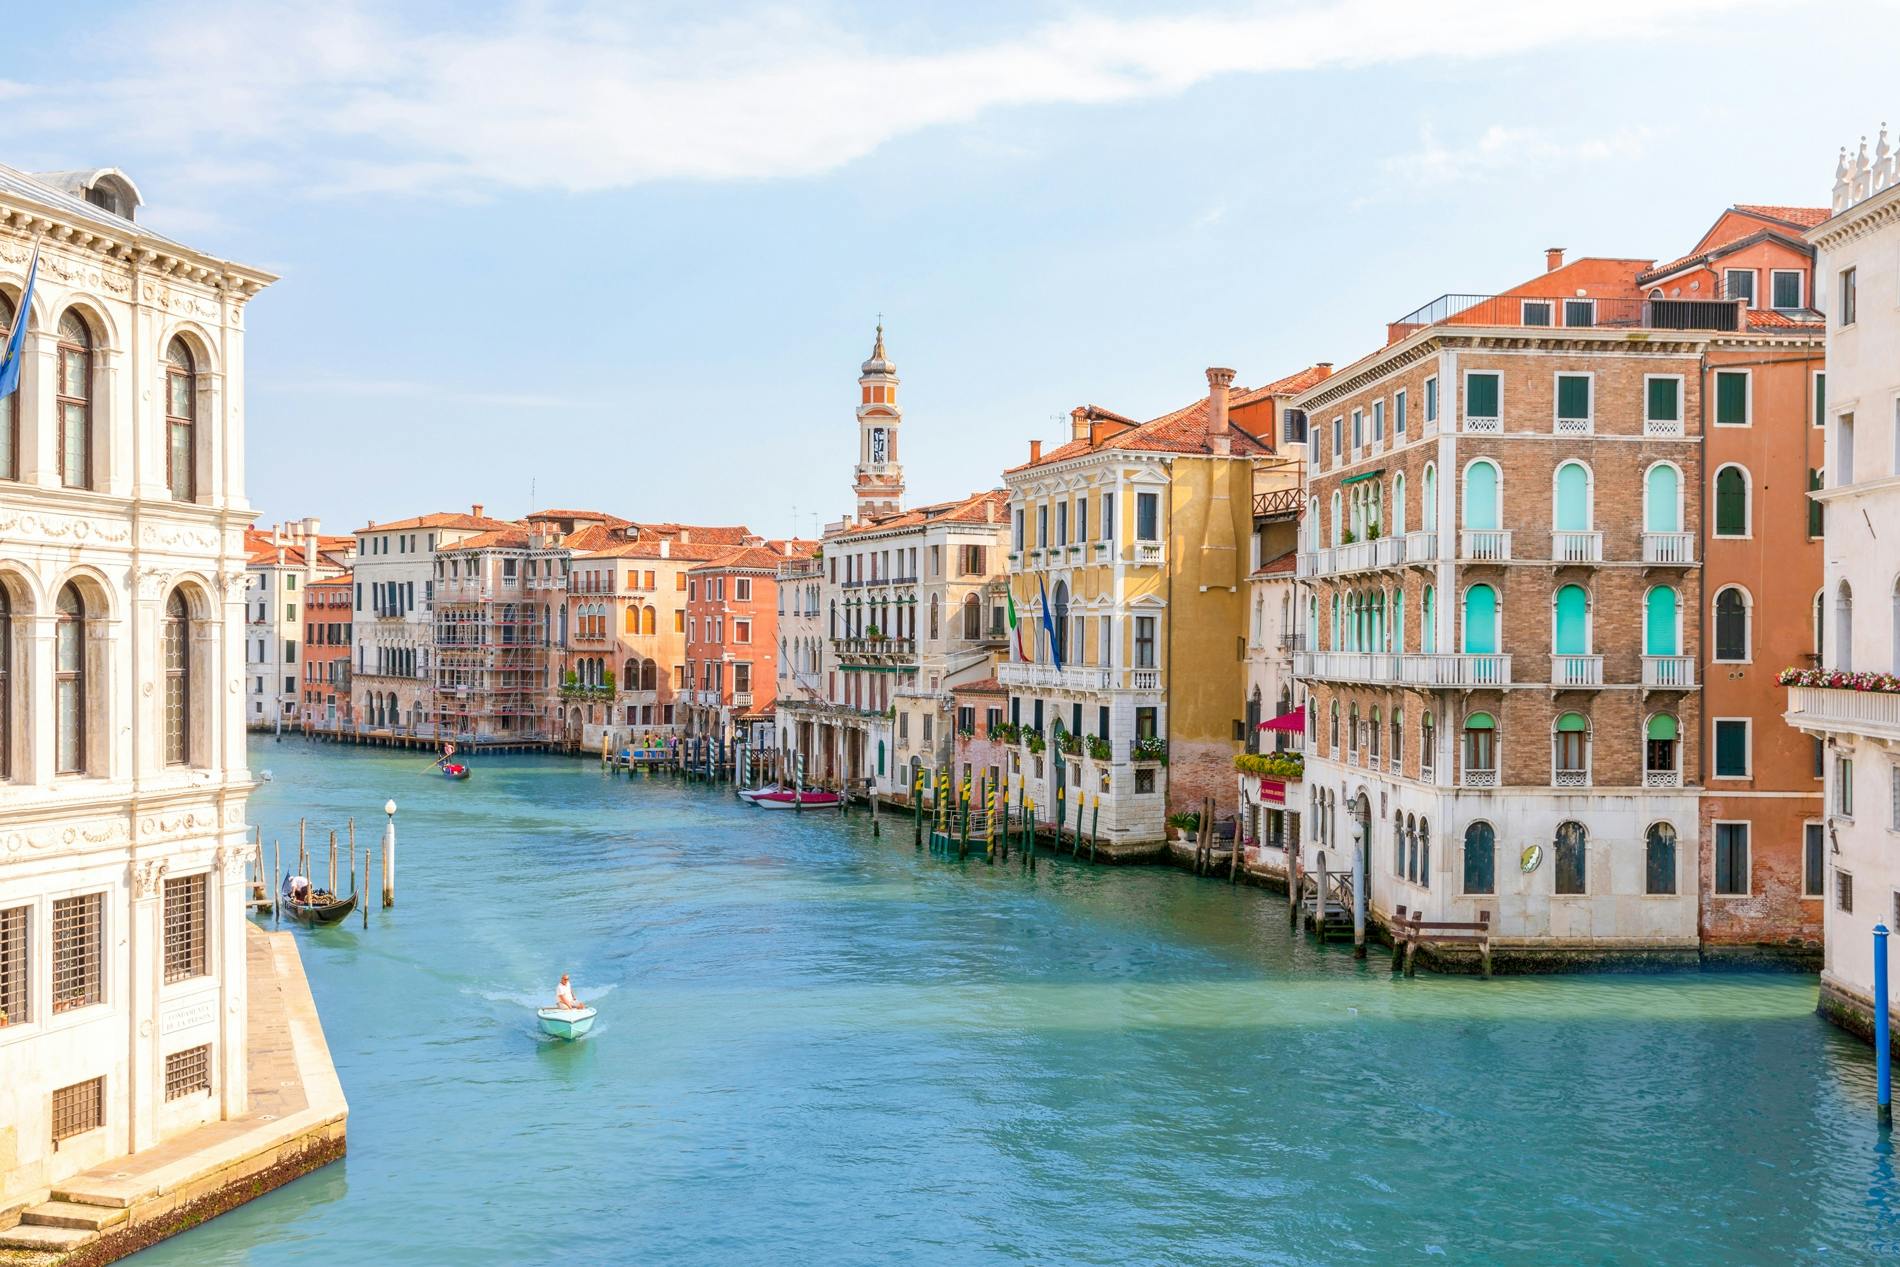 Excursión de un día a las joyas de Venecia de la UNESCO desde Roma